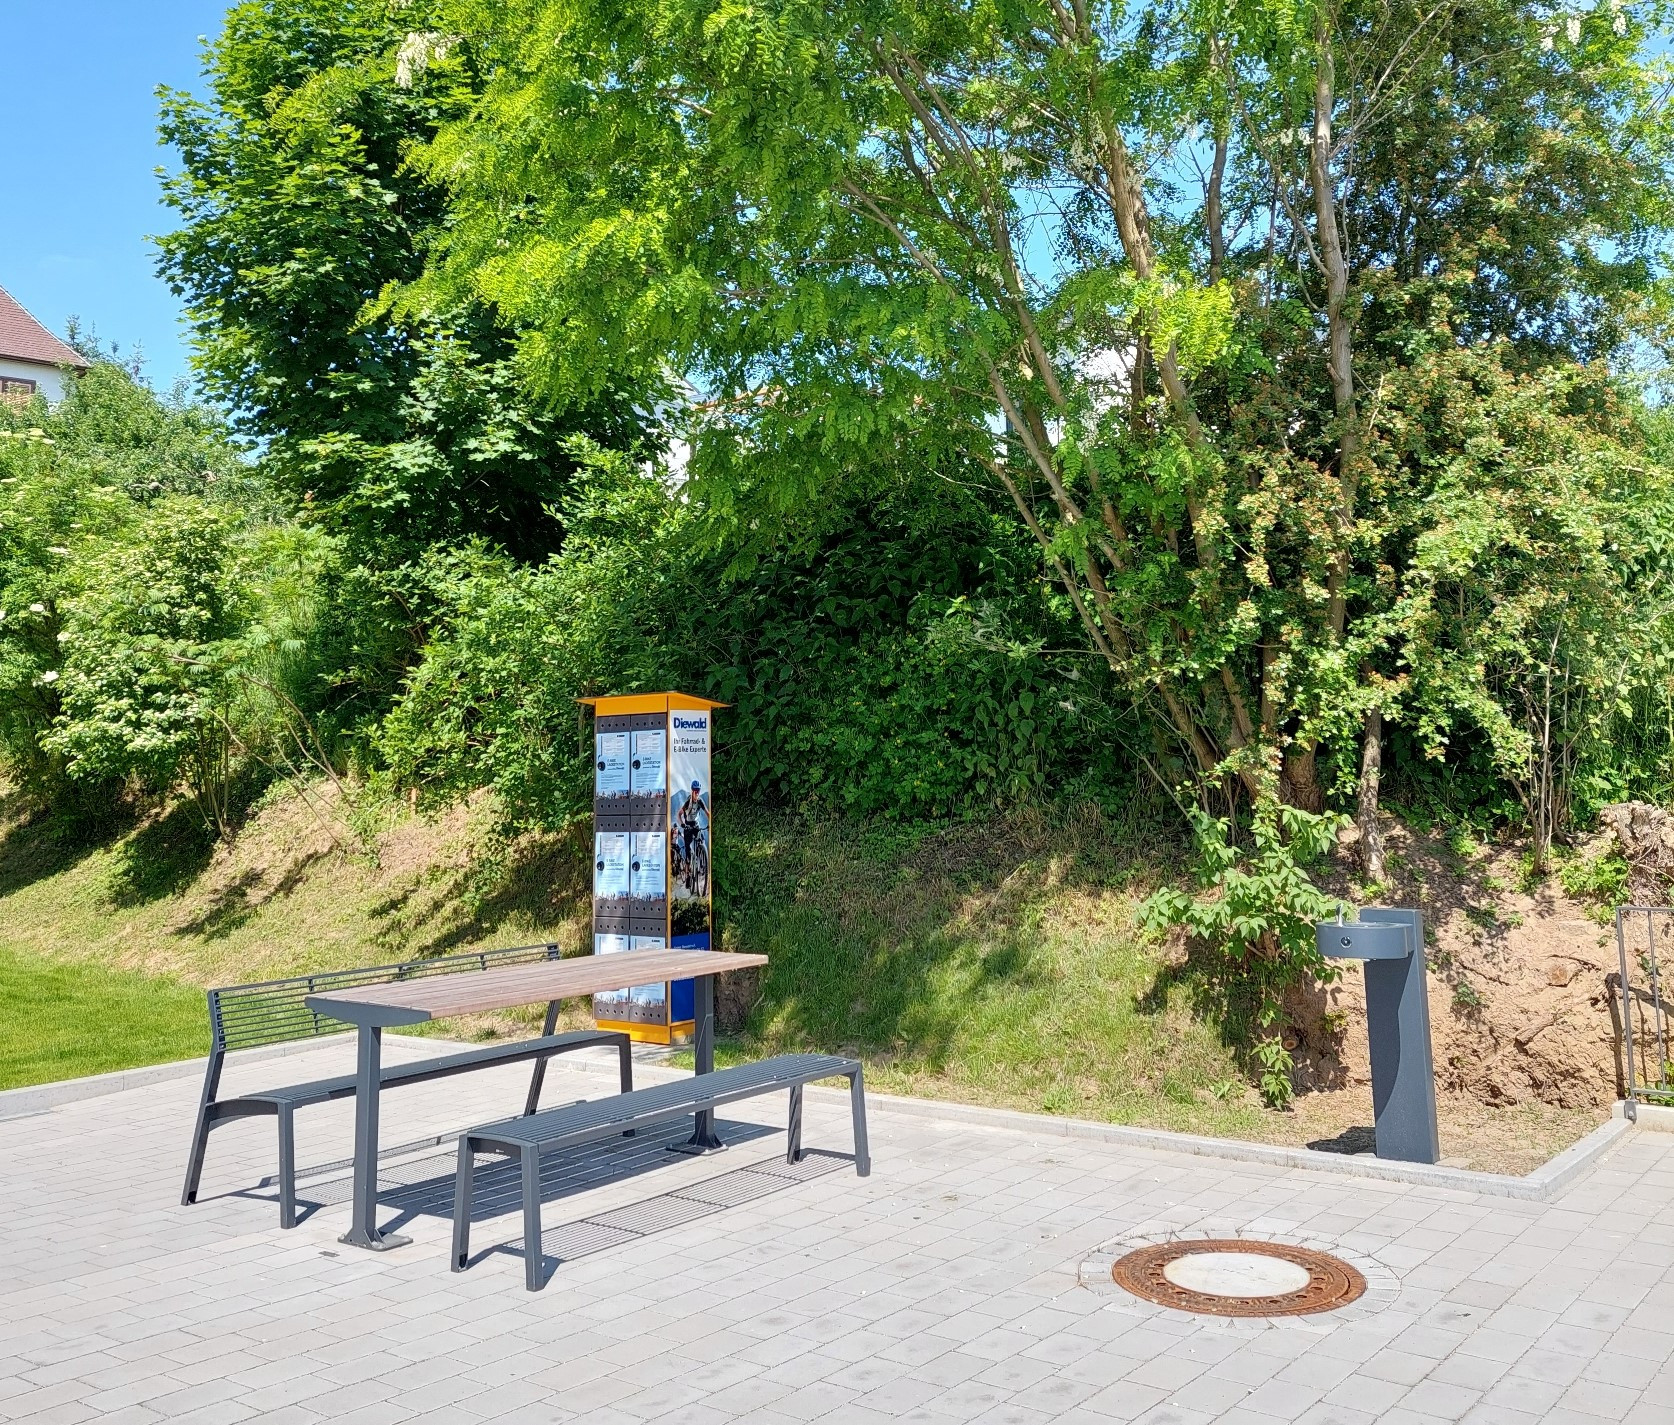 Rastplatz mit E-Bike-Ladestation und Trinkbrunnen